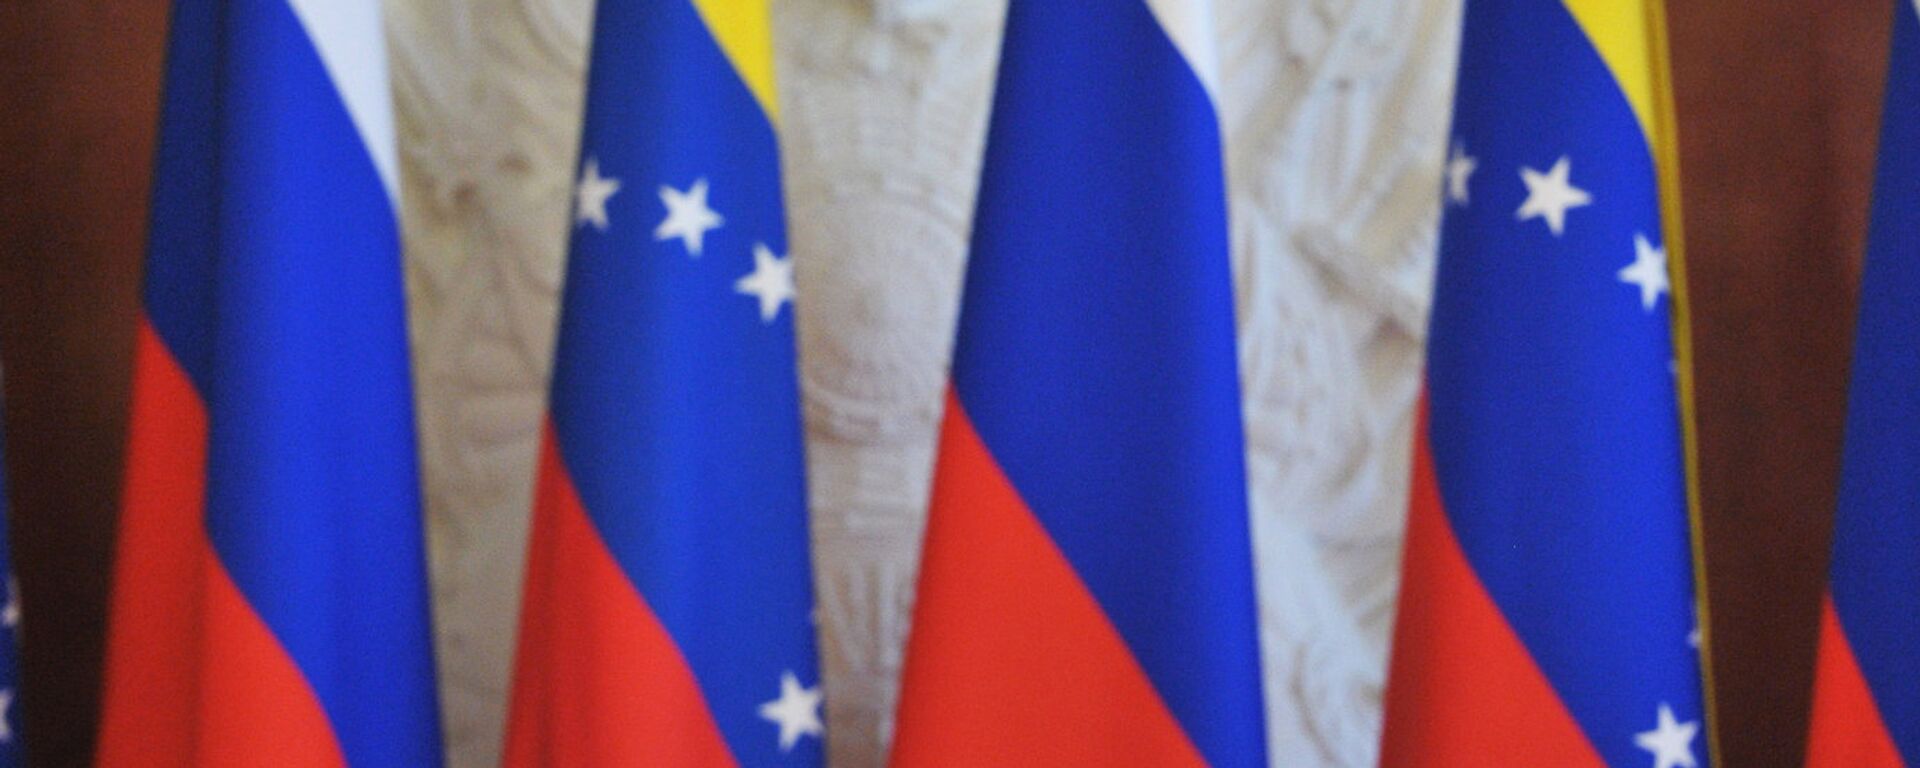 Las banderas de Rusia y Venezuela - Sputnik Mundo, 1920, 26.04.2022